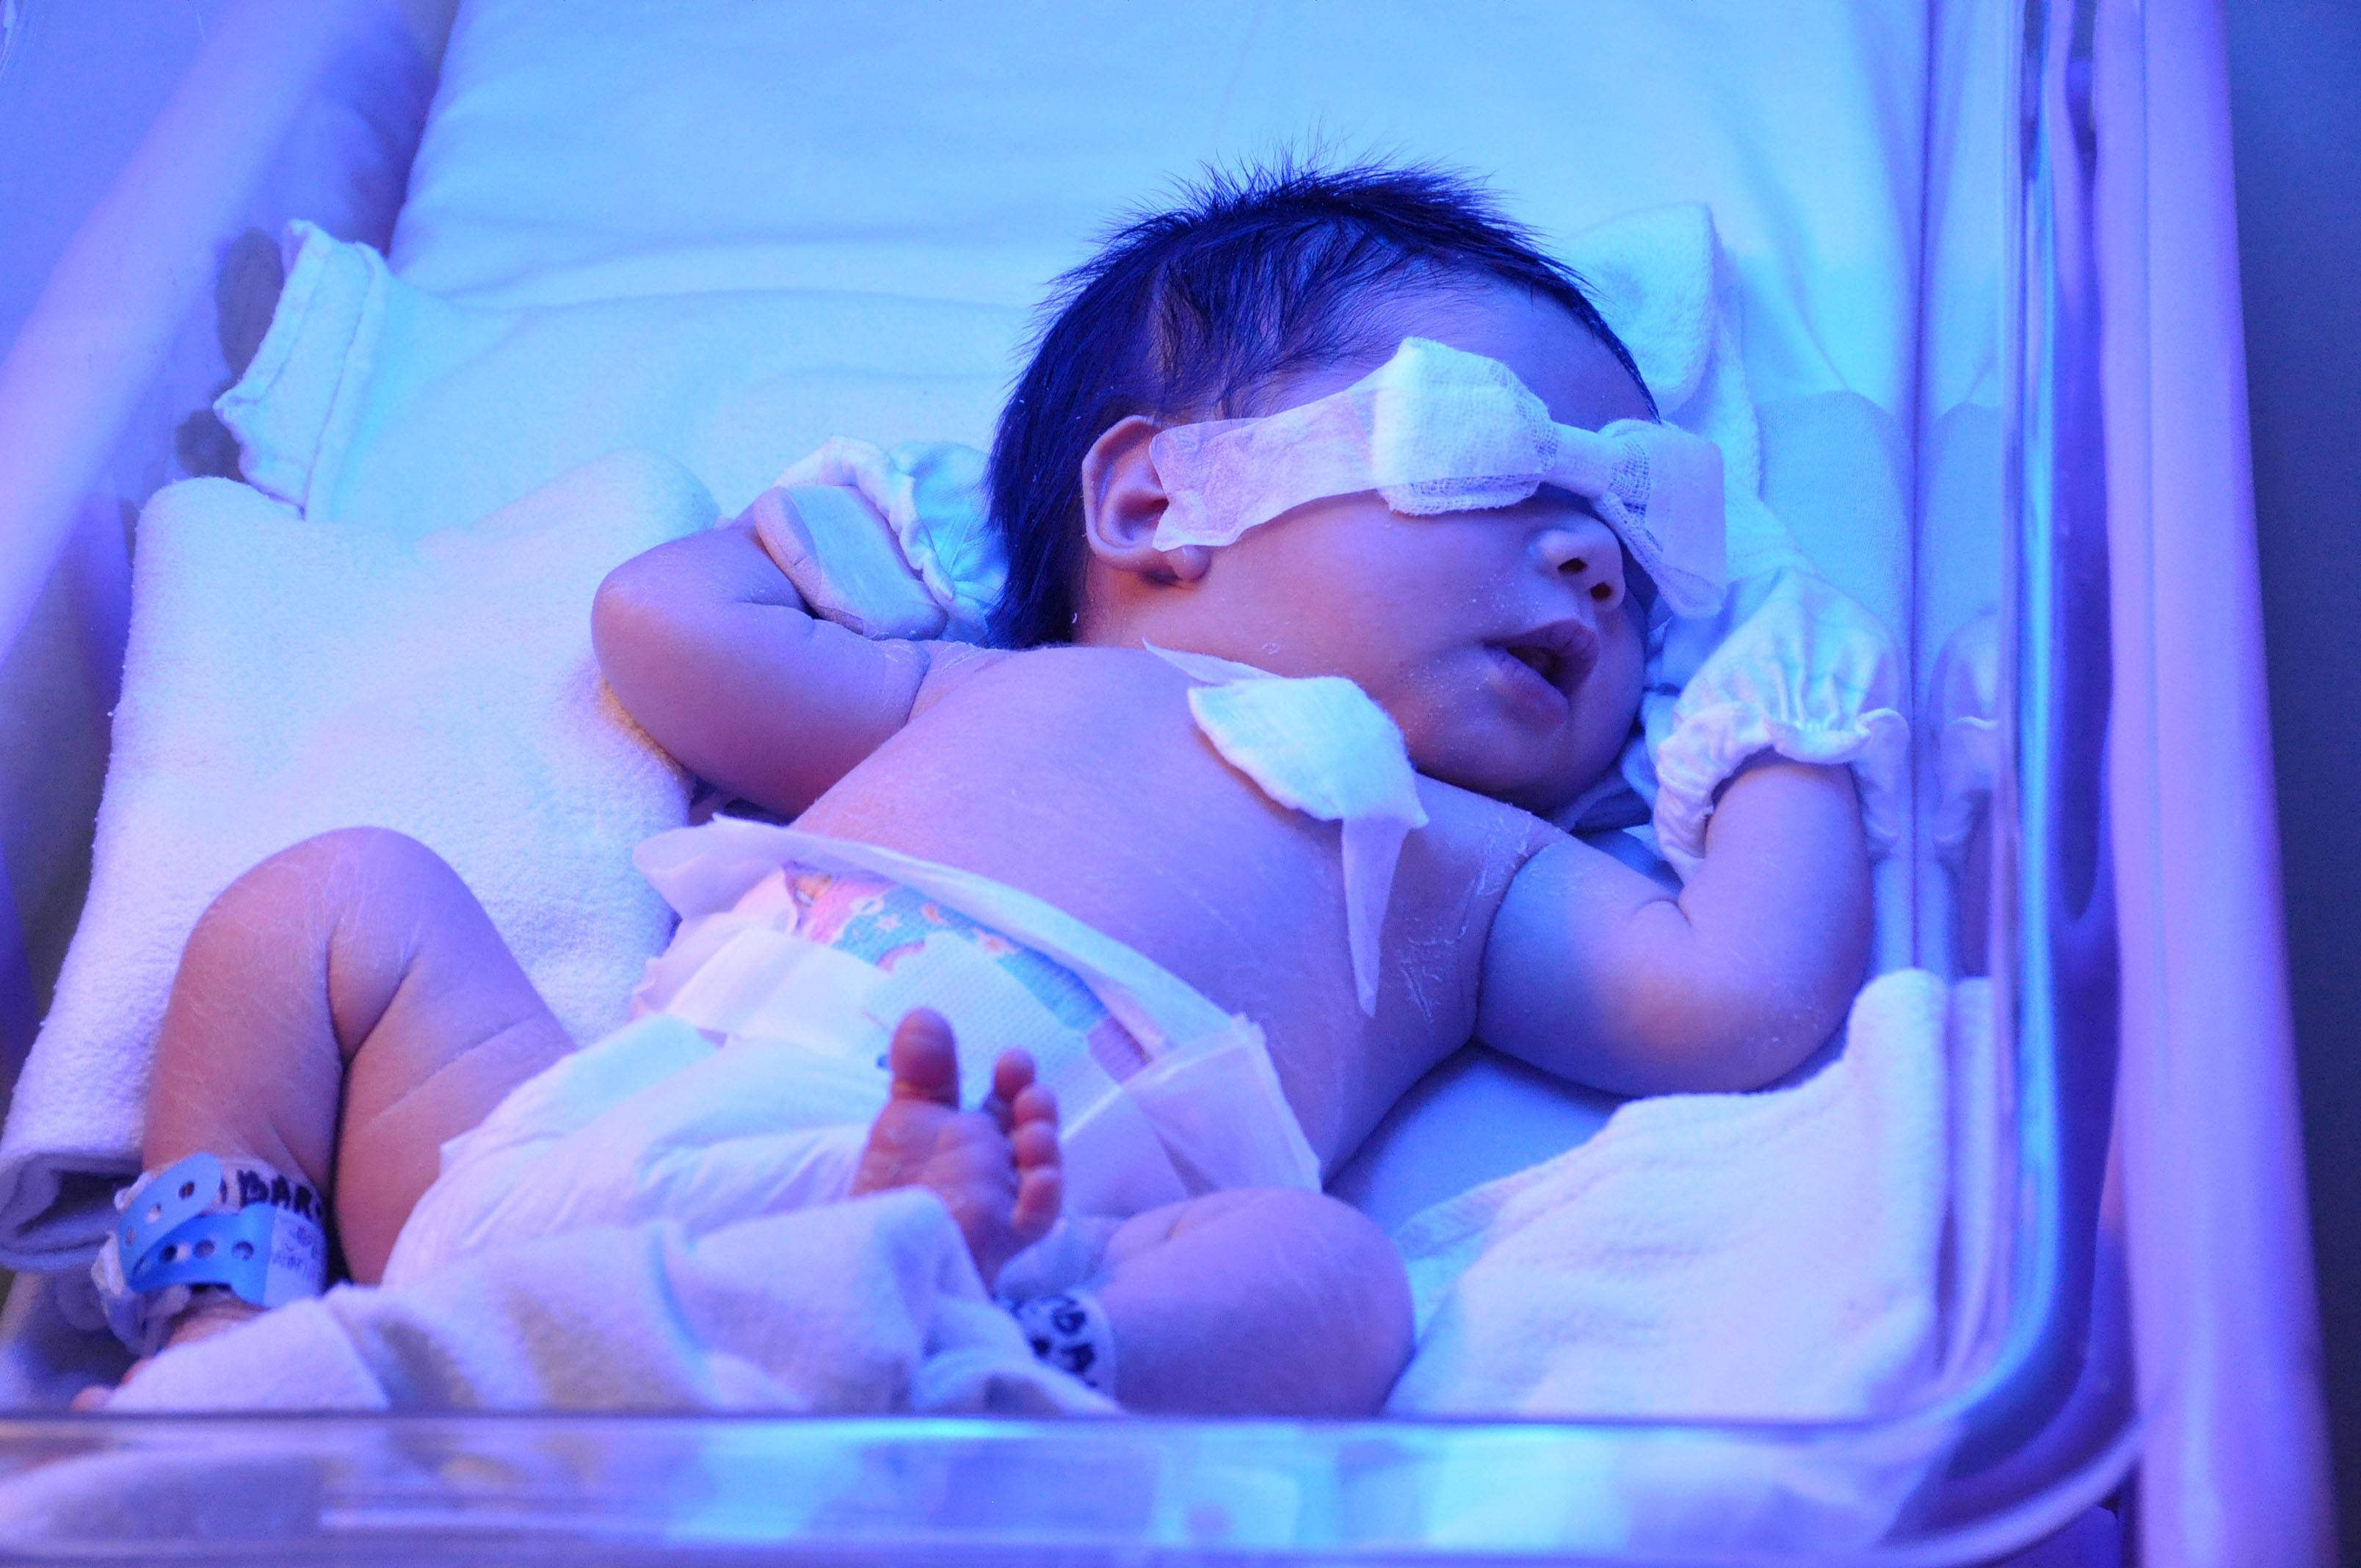 Желтушка новорожденных сколько дней. Желтушка у новорожденных фототерапия. Гипербилирубинемия желтуха новорожденных. Новорожденных под лампой отжельухи. Лампа для новорожденных от желтушки в роддоме.